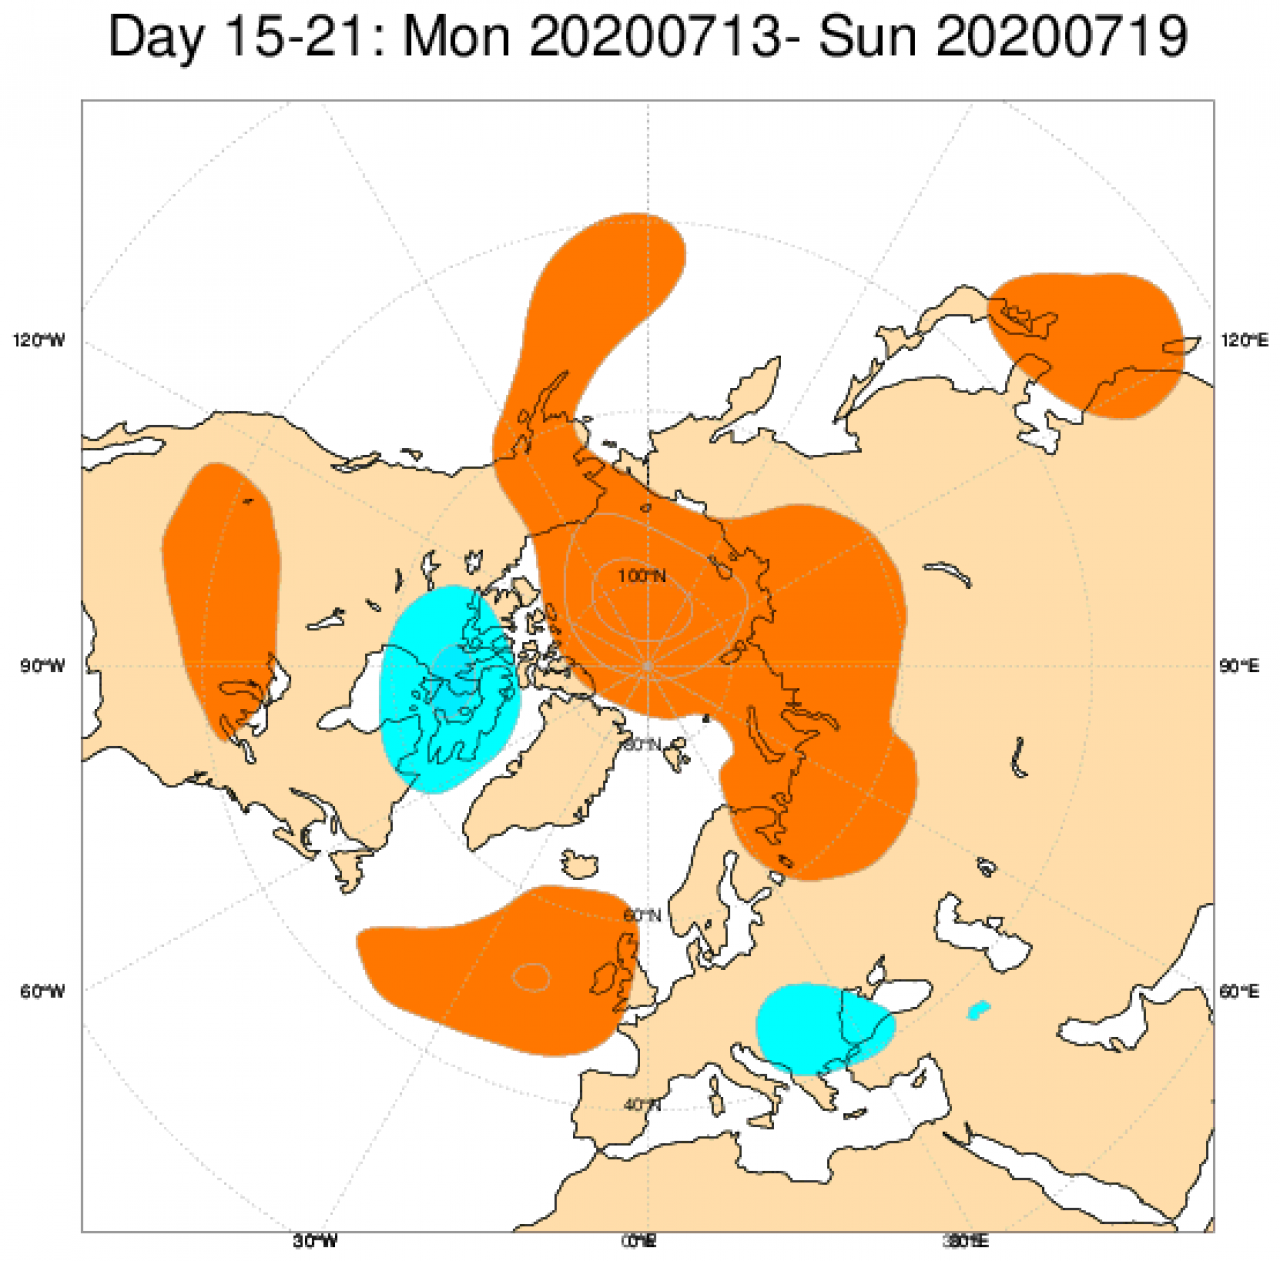 Le anomalie di geopotenziale attese in Europa secondo il modello ECMWF in riferimento al periodo 13-19 luglio